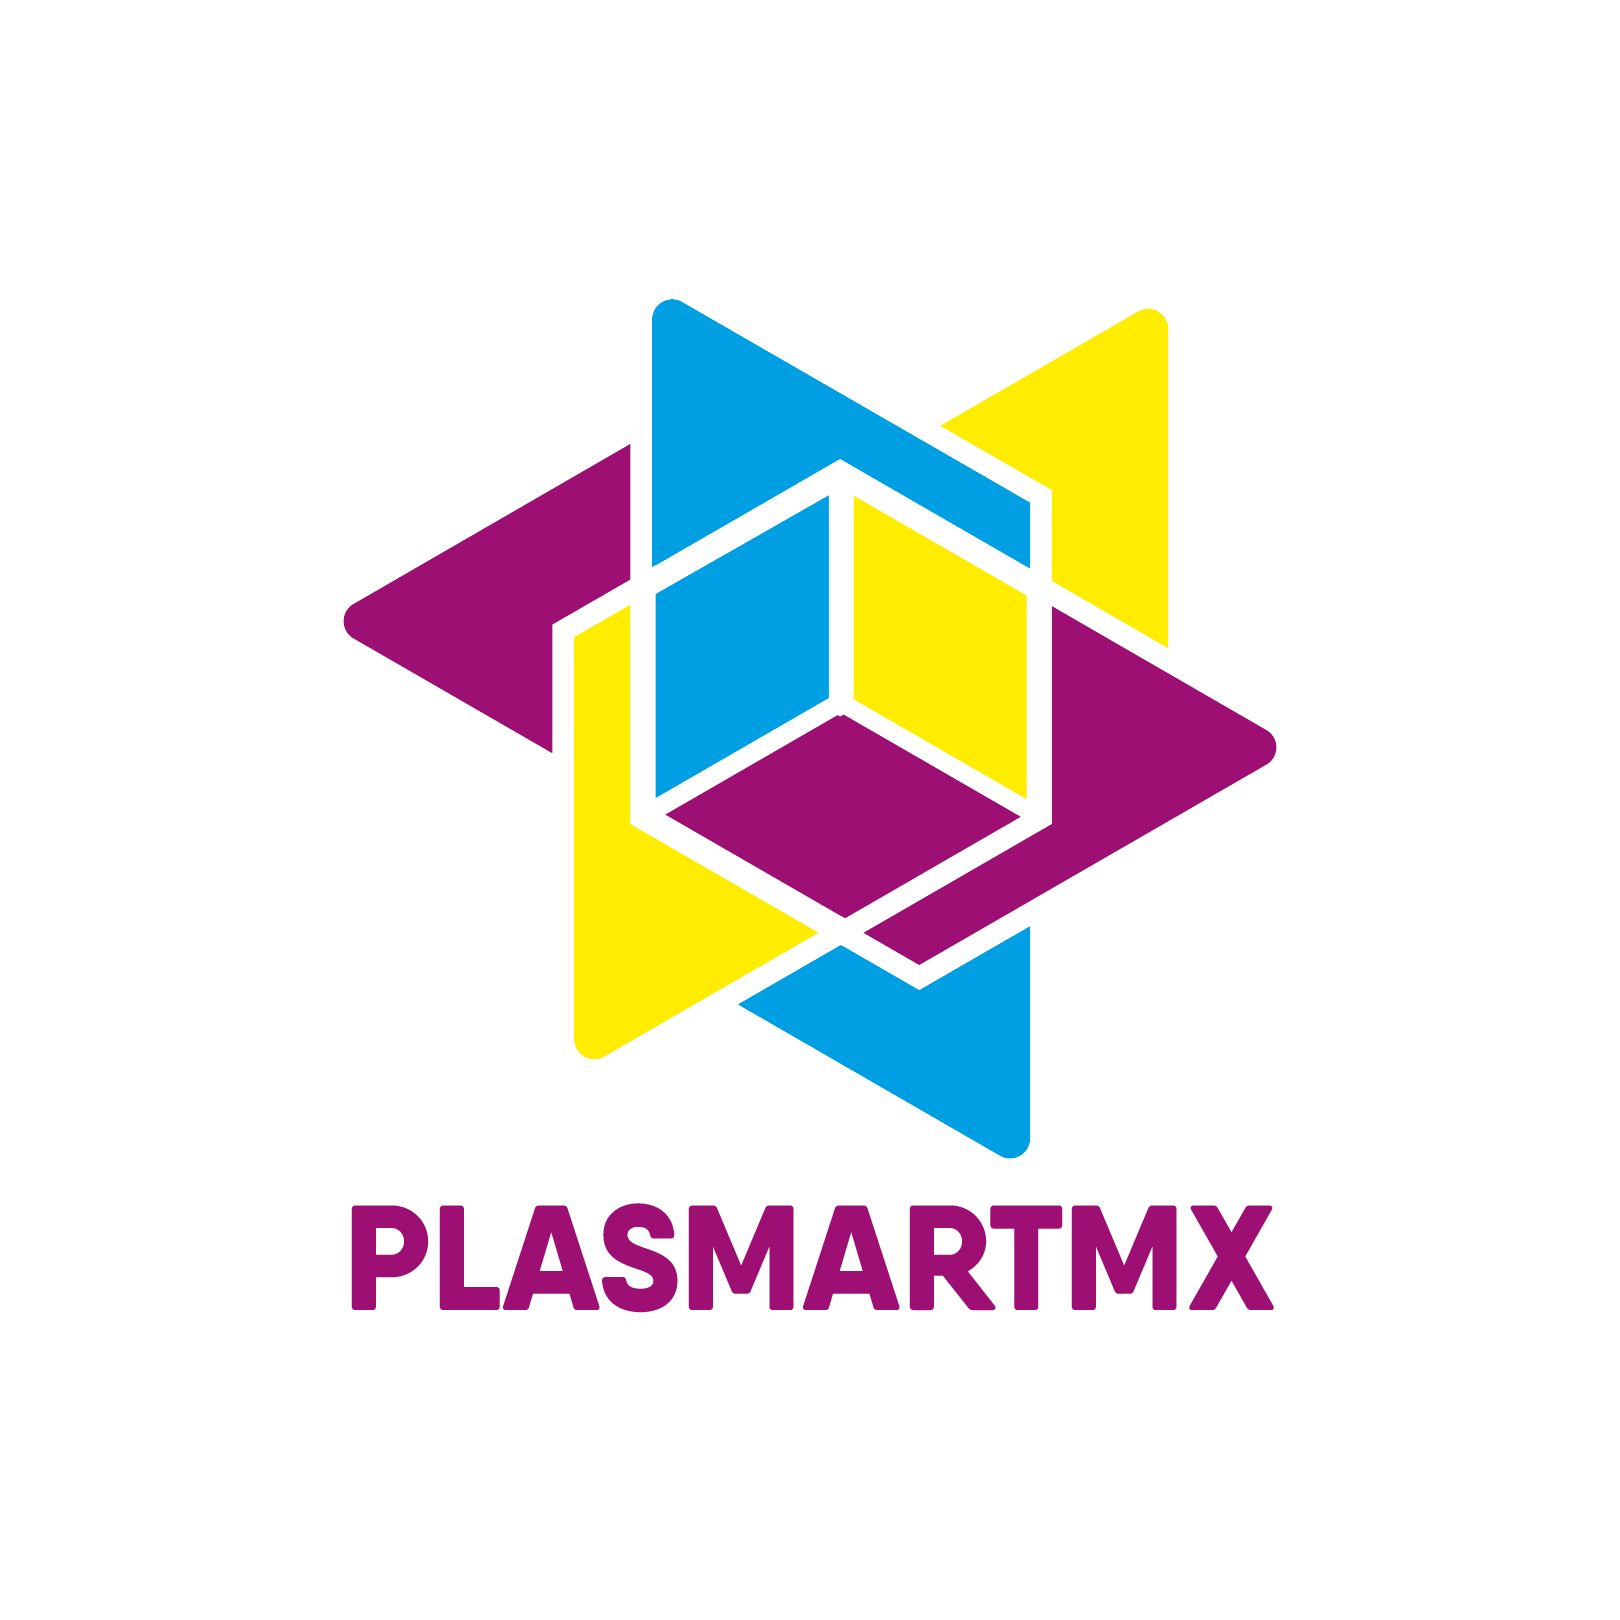 PLASMARTMX